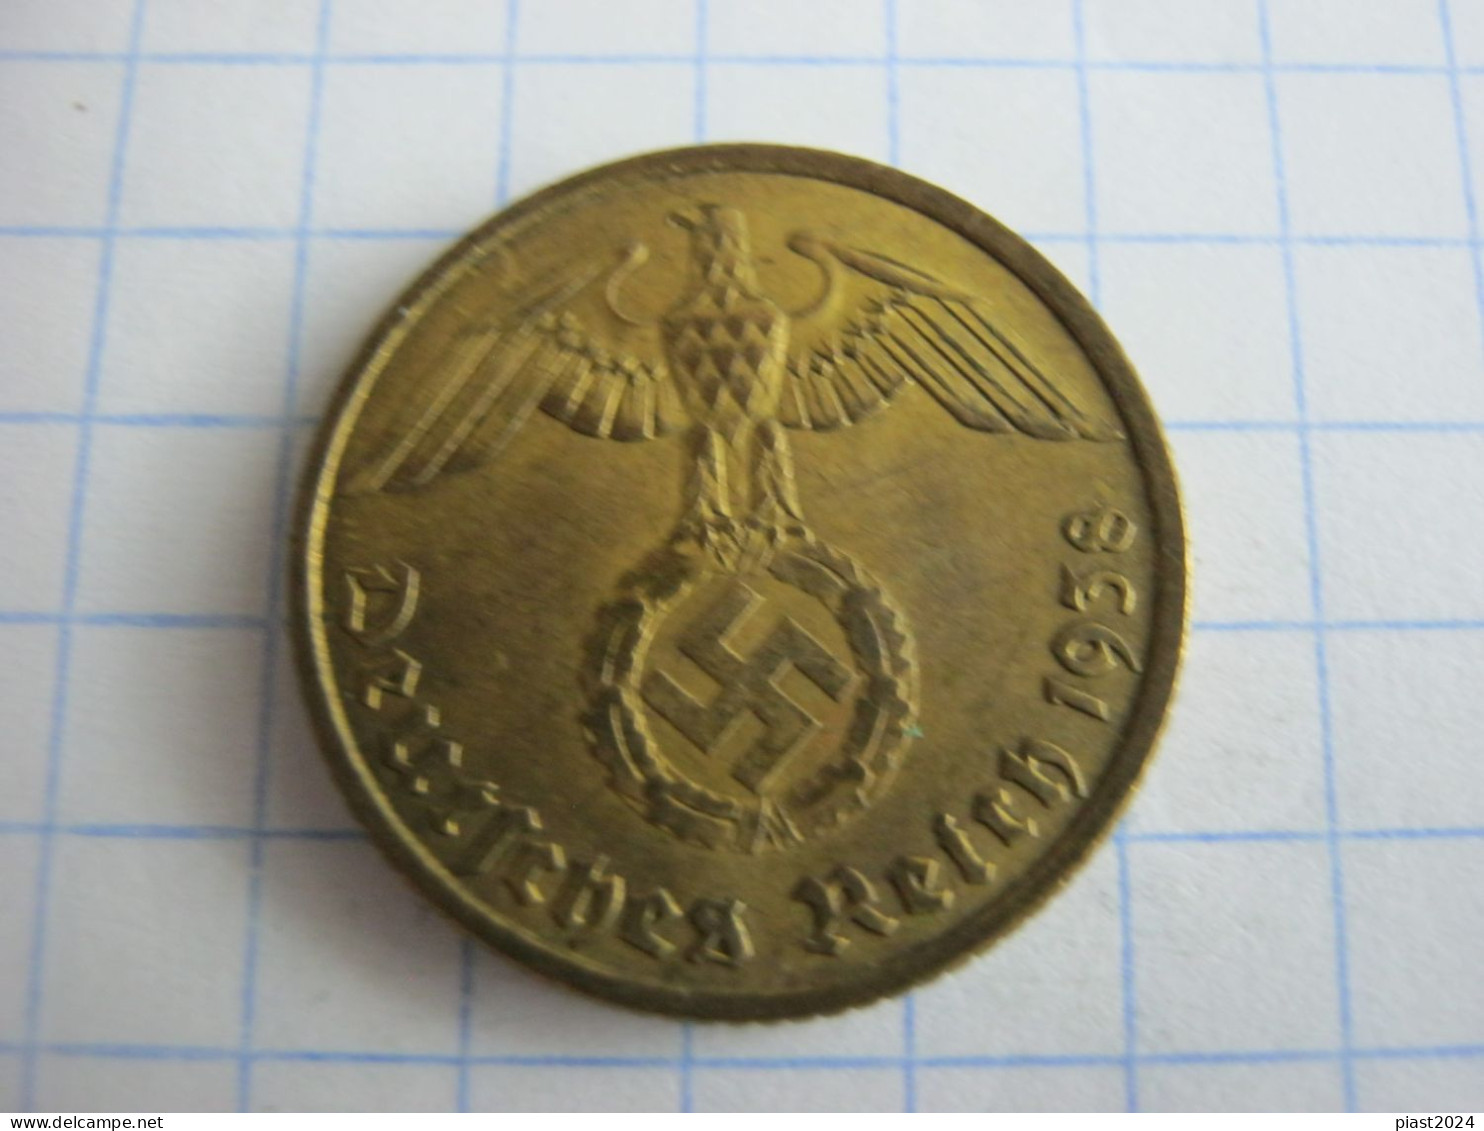 Germany 10 Reichspfennig 1938 F - 10 Reichspfennig